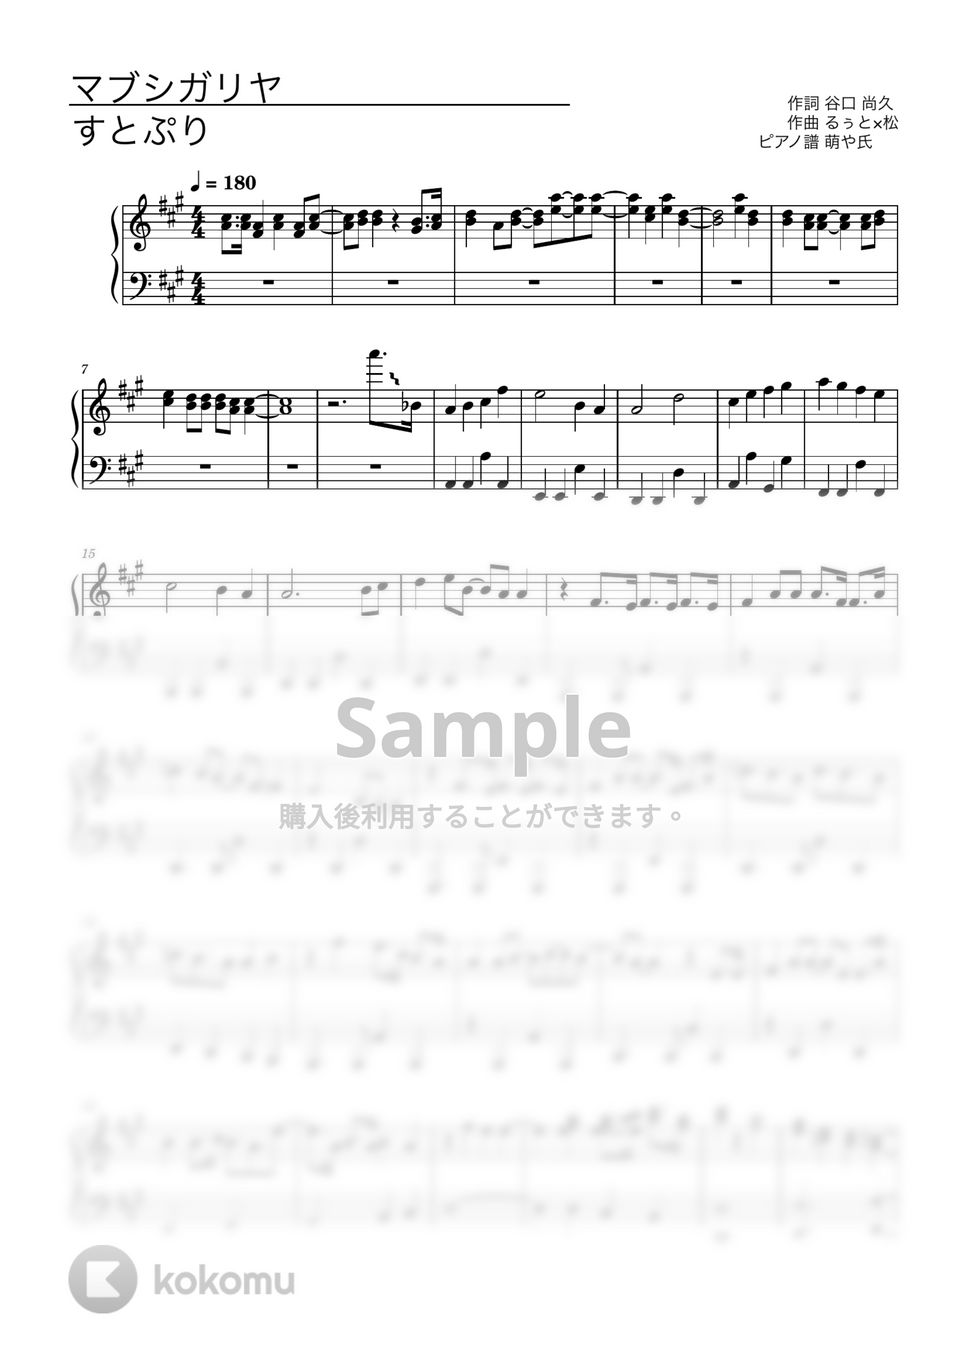 すとぷり - マブシガリヤ (ピアノソロ譜) by 萌や氏